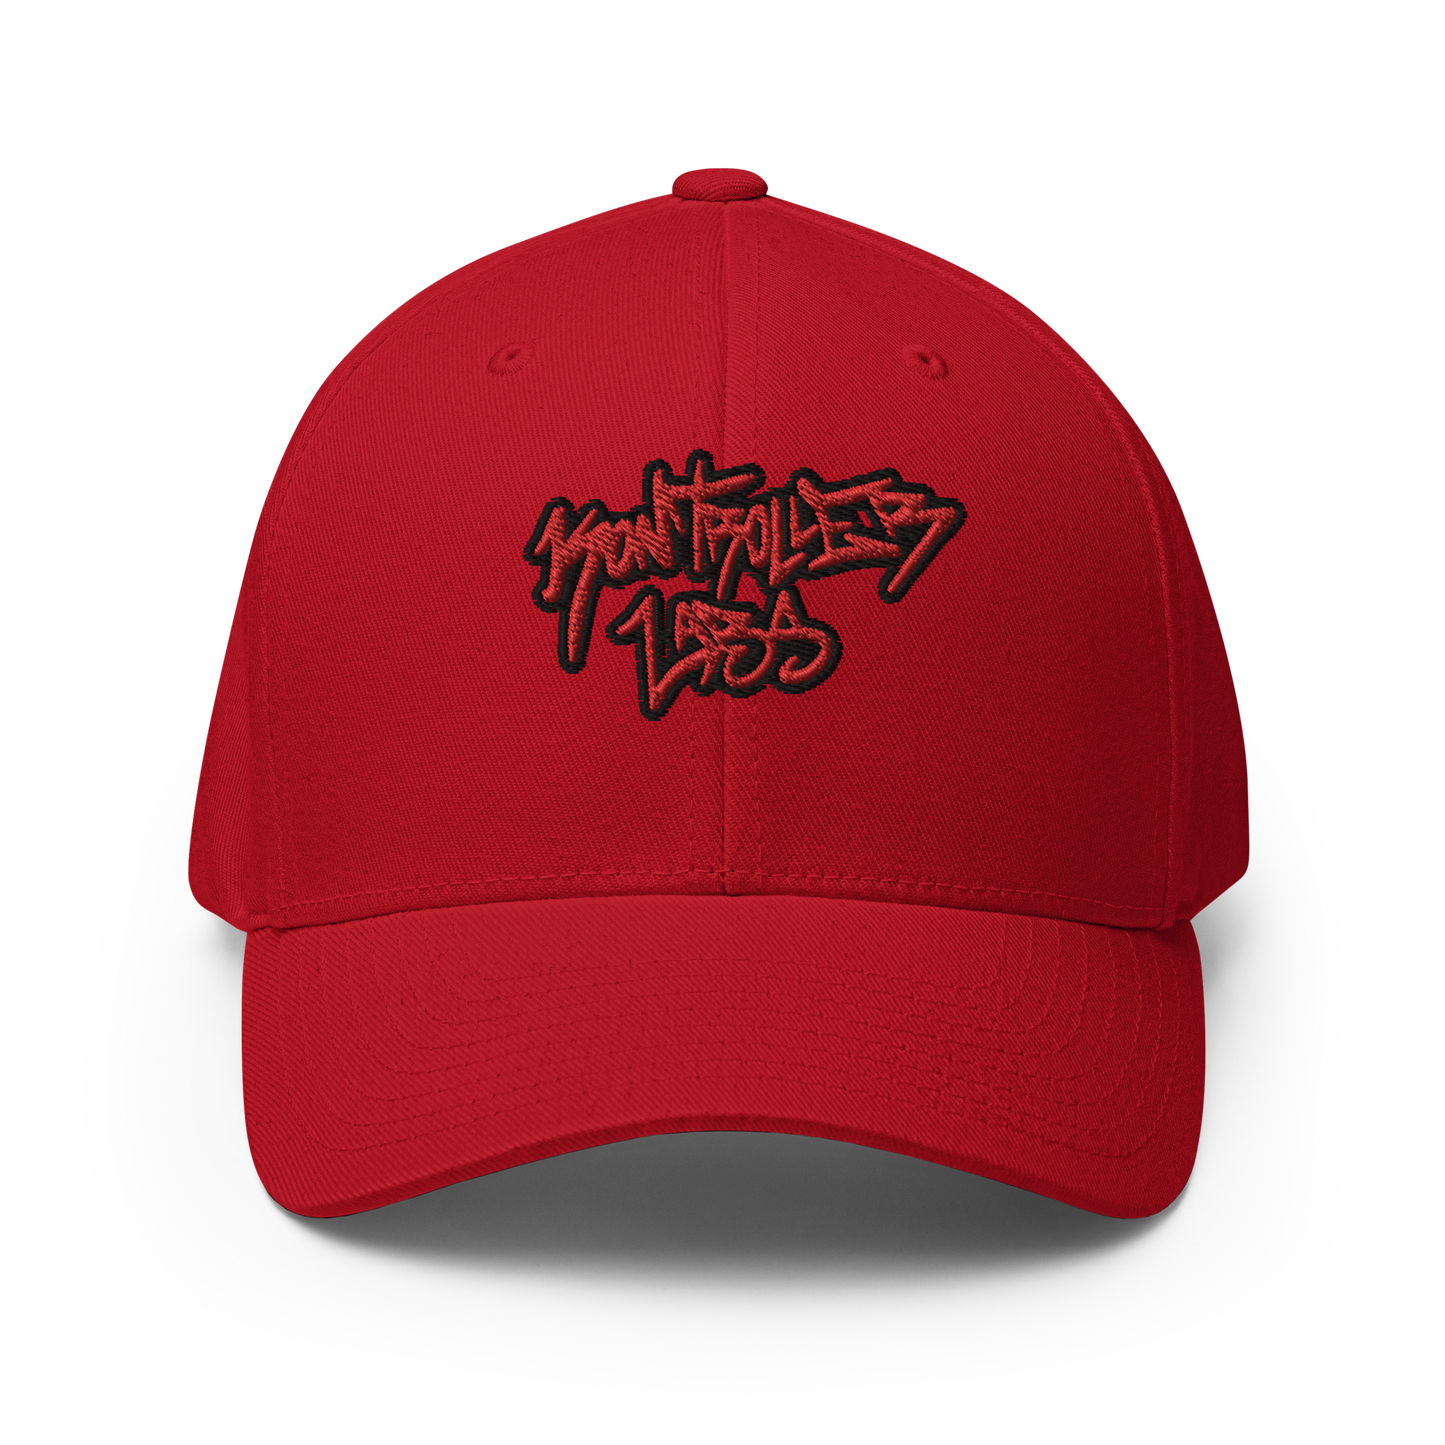 Kontroller Labs Black/Red Graffiti Flex Fit Hat